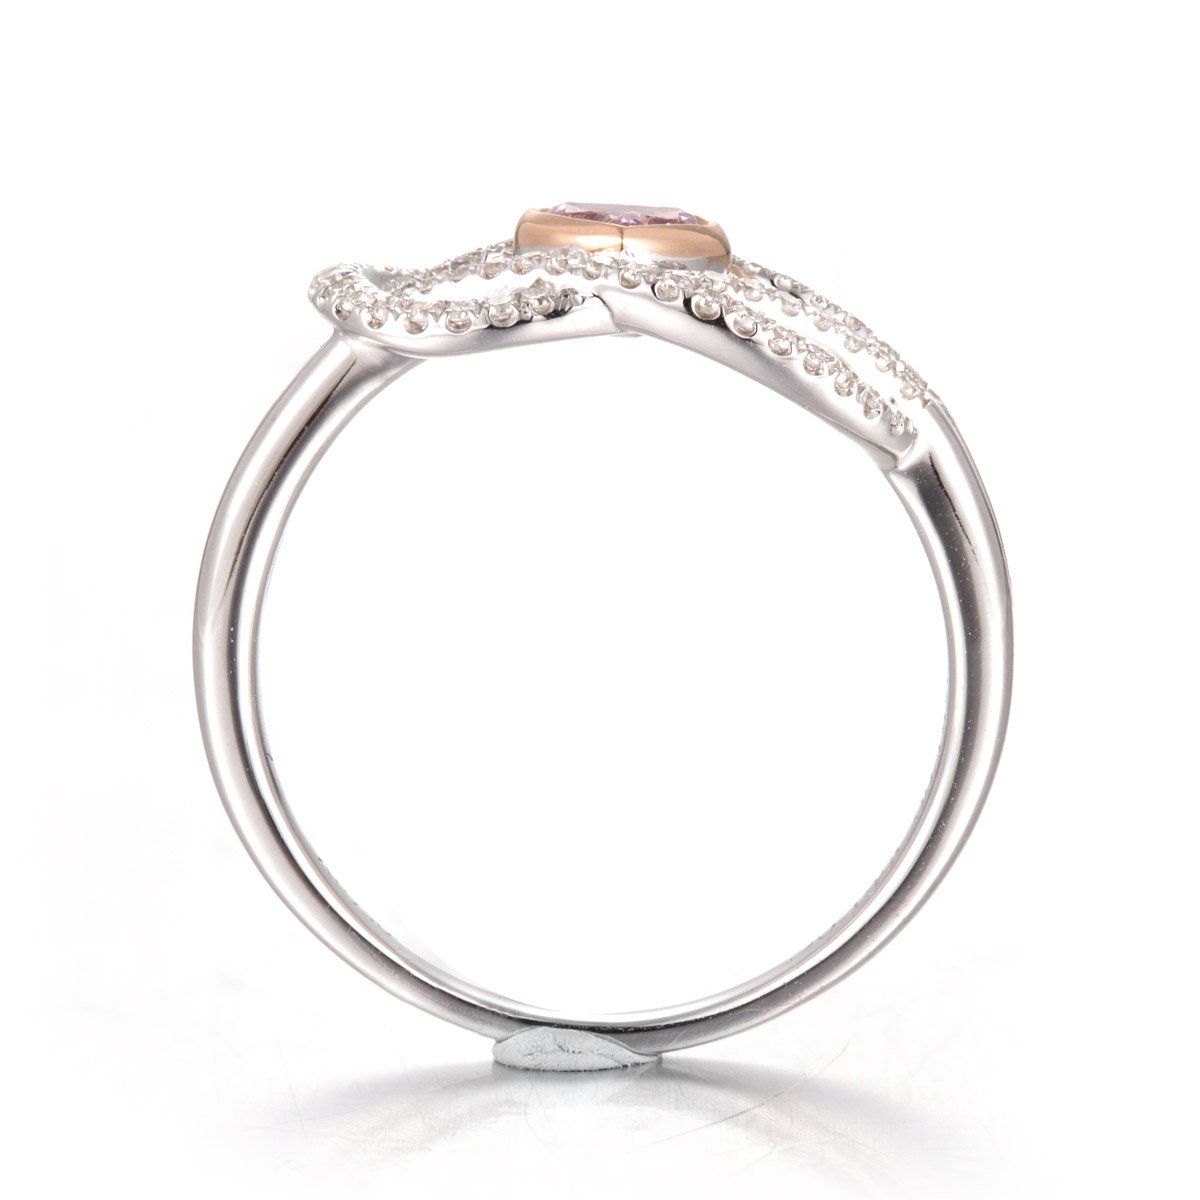 Fancy Intense Purple Pink Diamond Ring, 0.14 Ct. (0.32 Ct. TW), Heart shape, GIA Certified, 6173600187